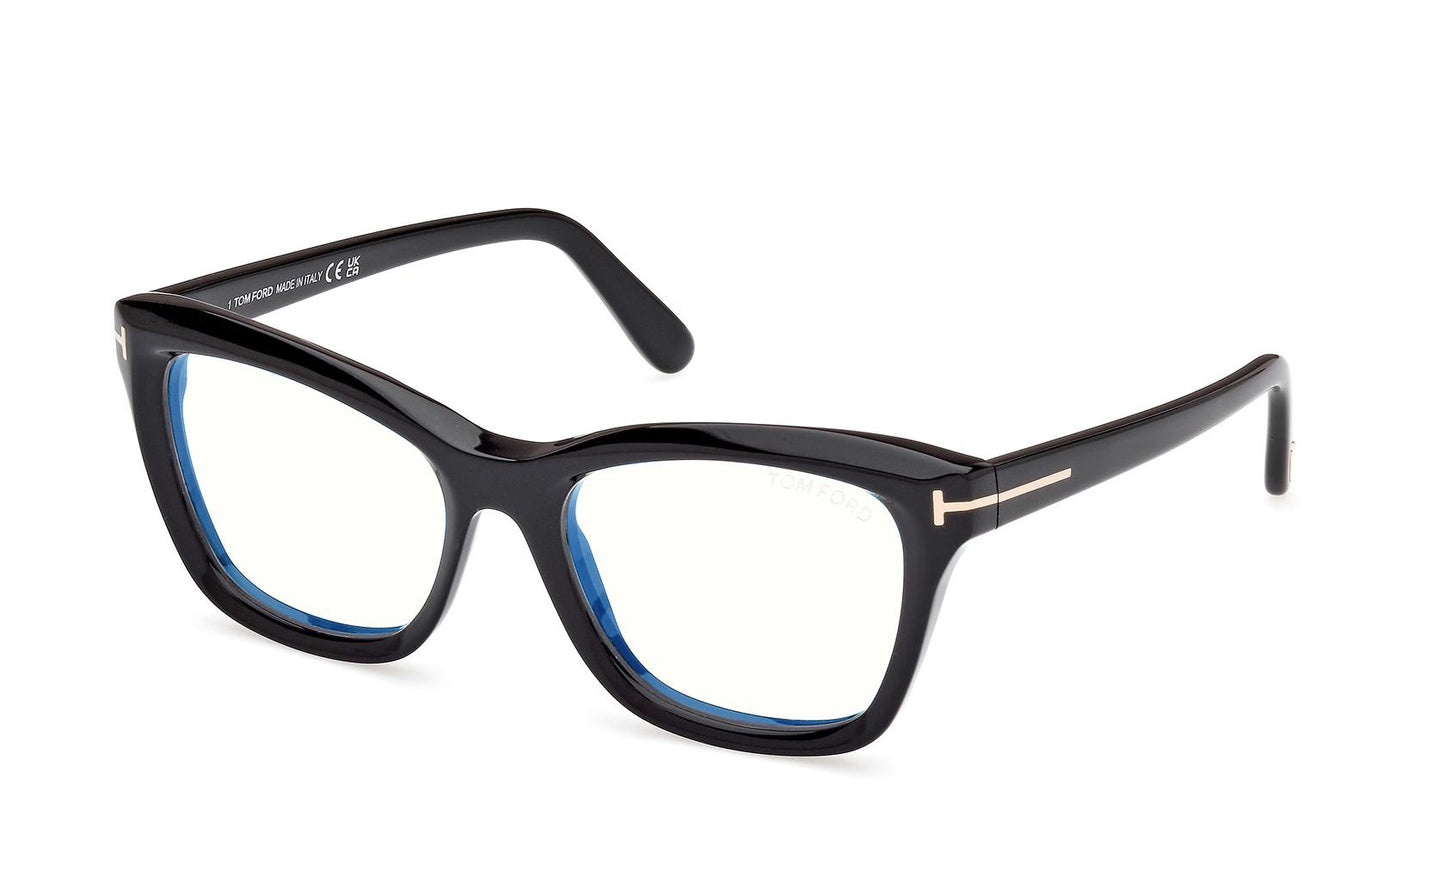 Tom Ford Eyeglasses FT5909/B 001